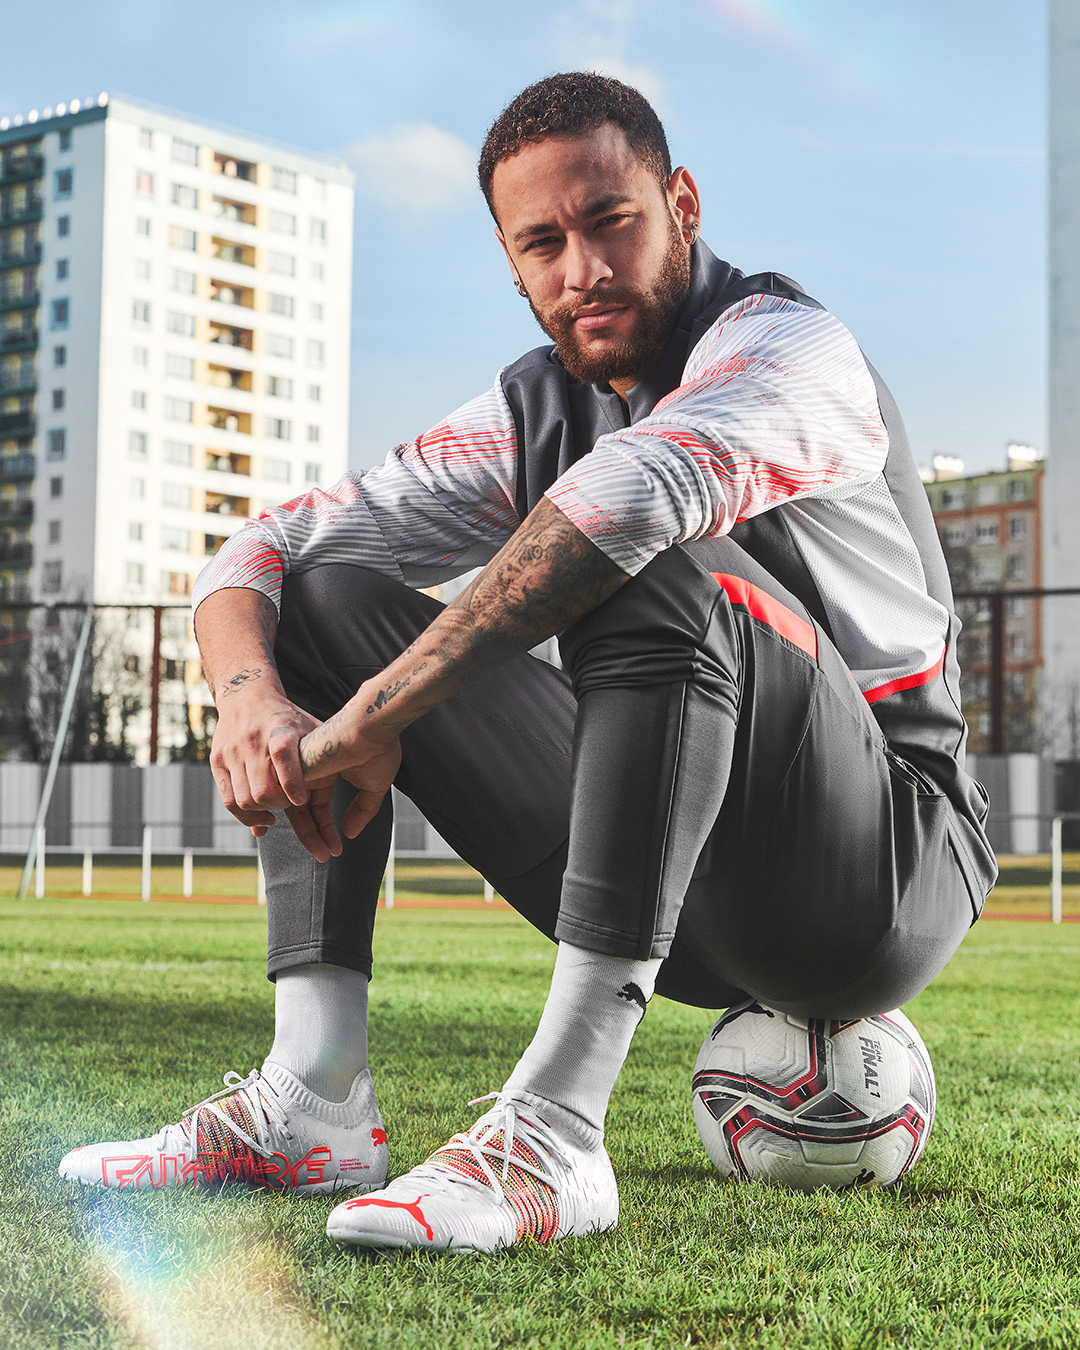 Neymar Jr: The new Puma Future Z Spectra boots - Neymar Jr.